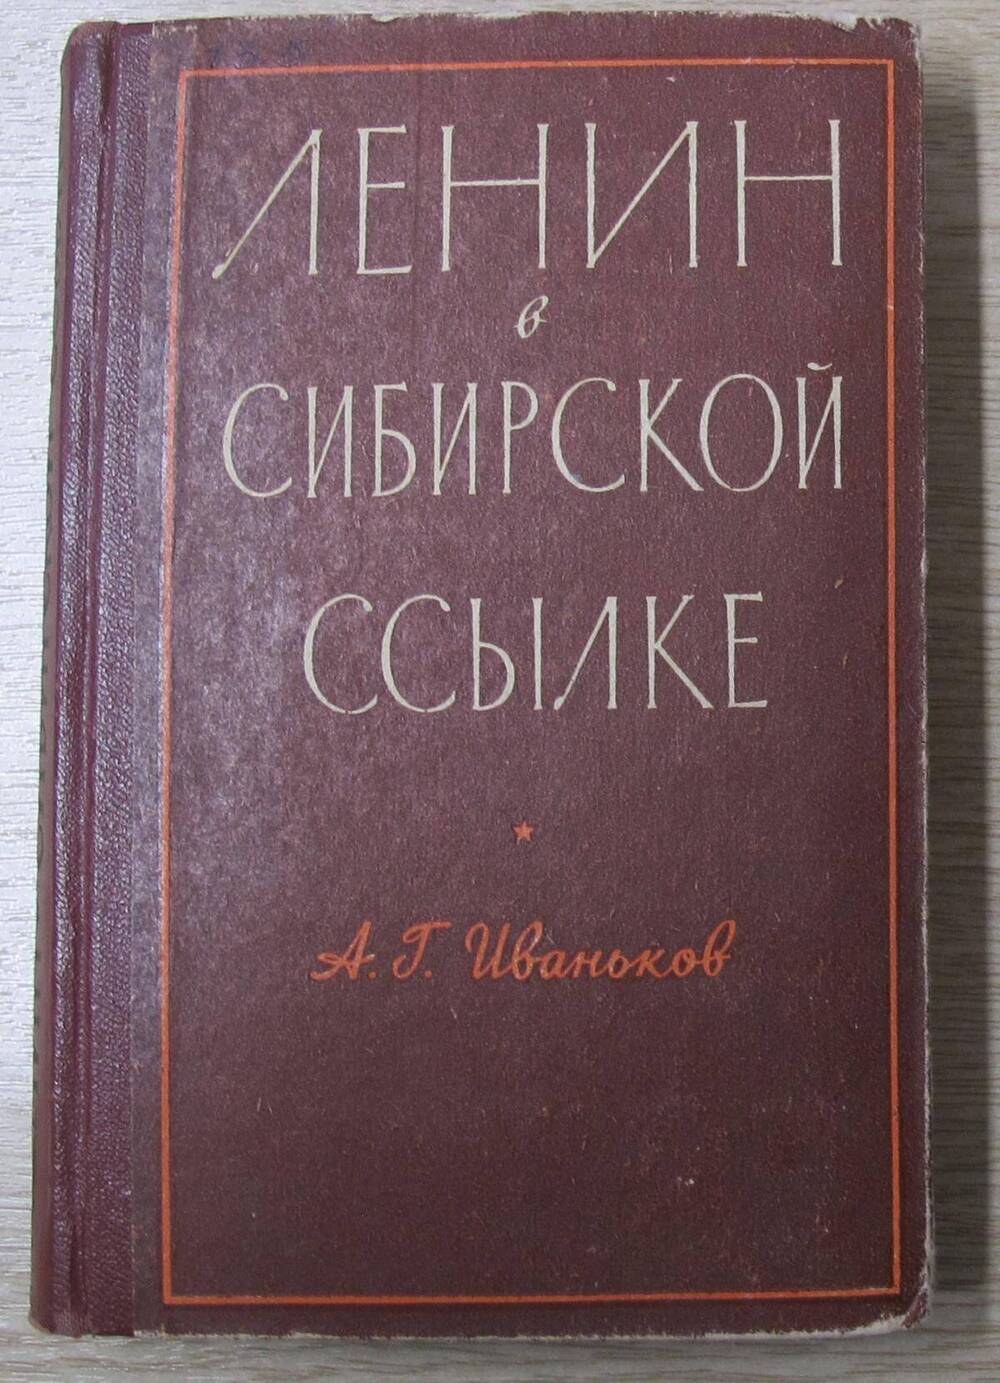 Книга Ленин в сибирской ссылке.